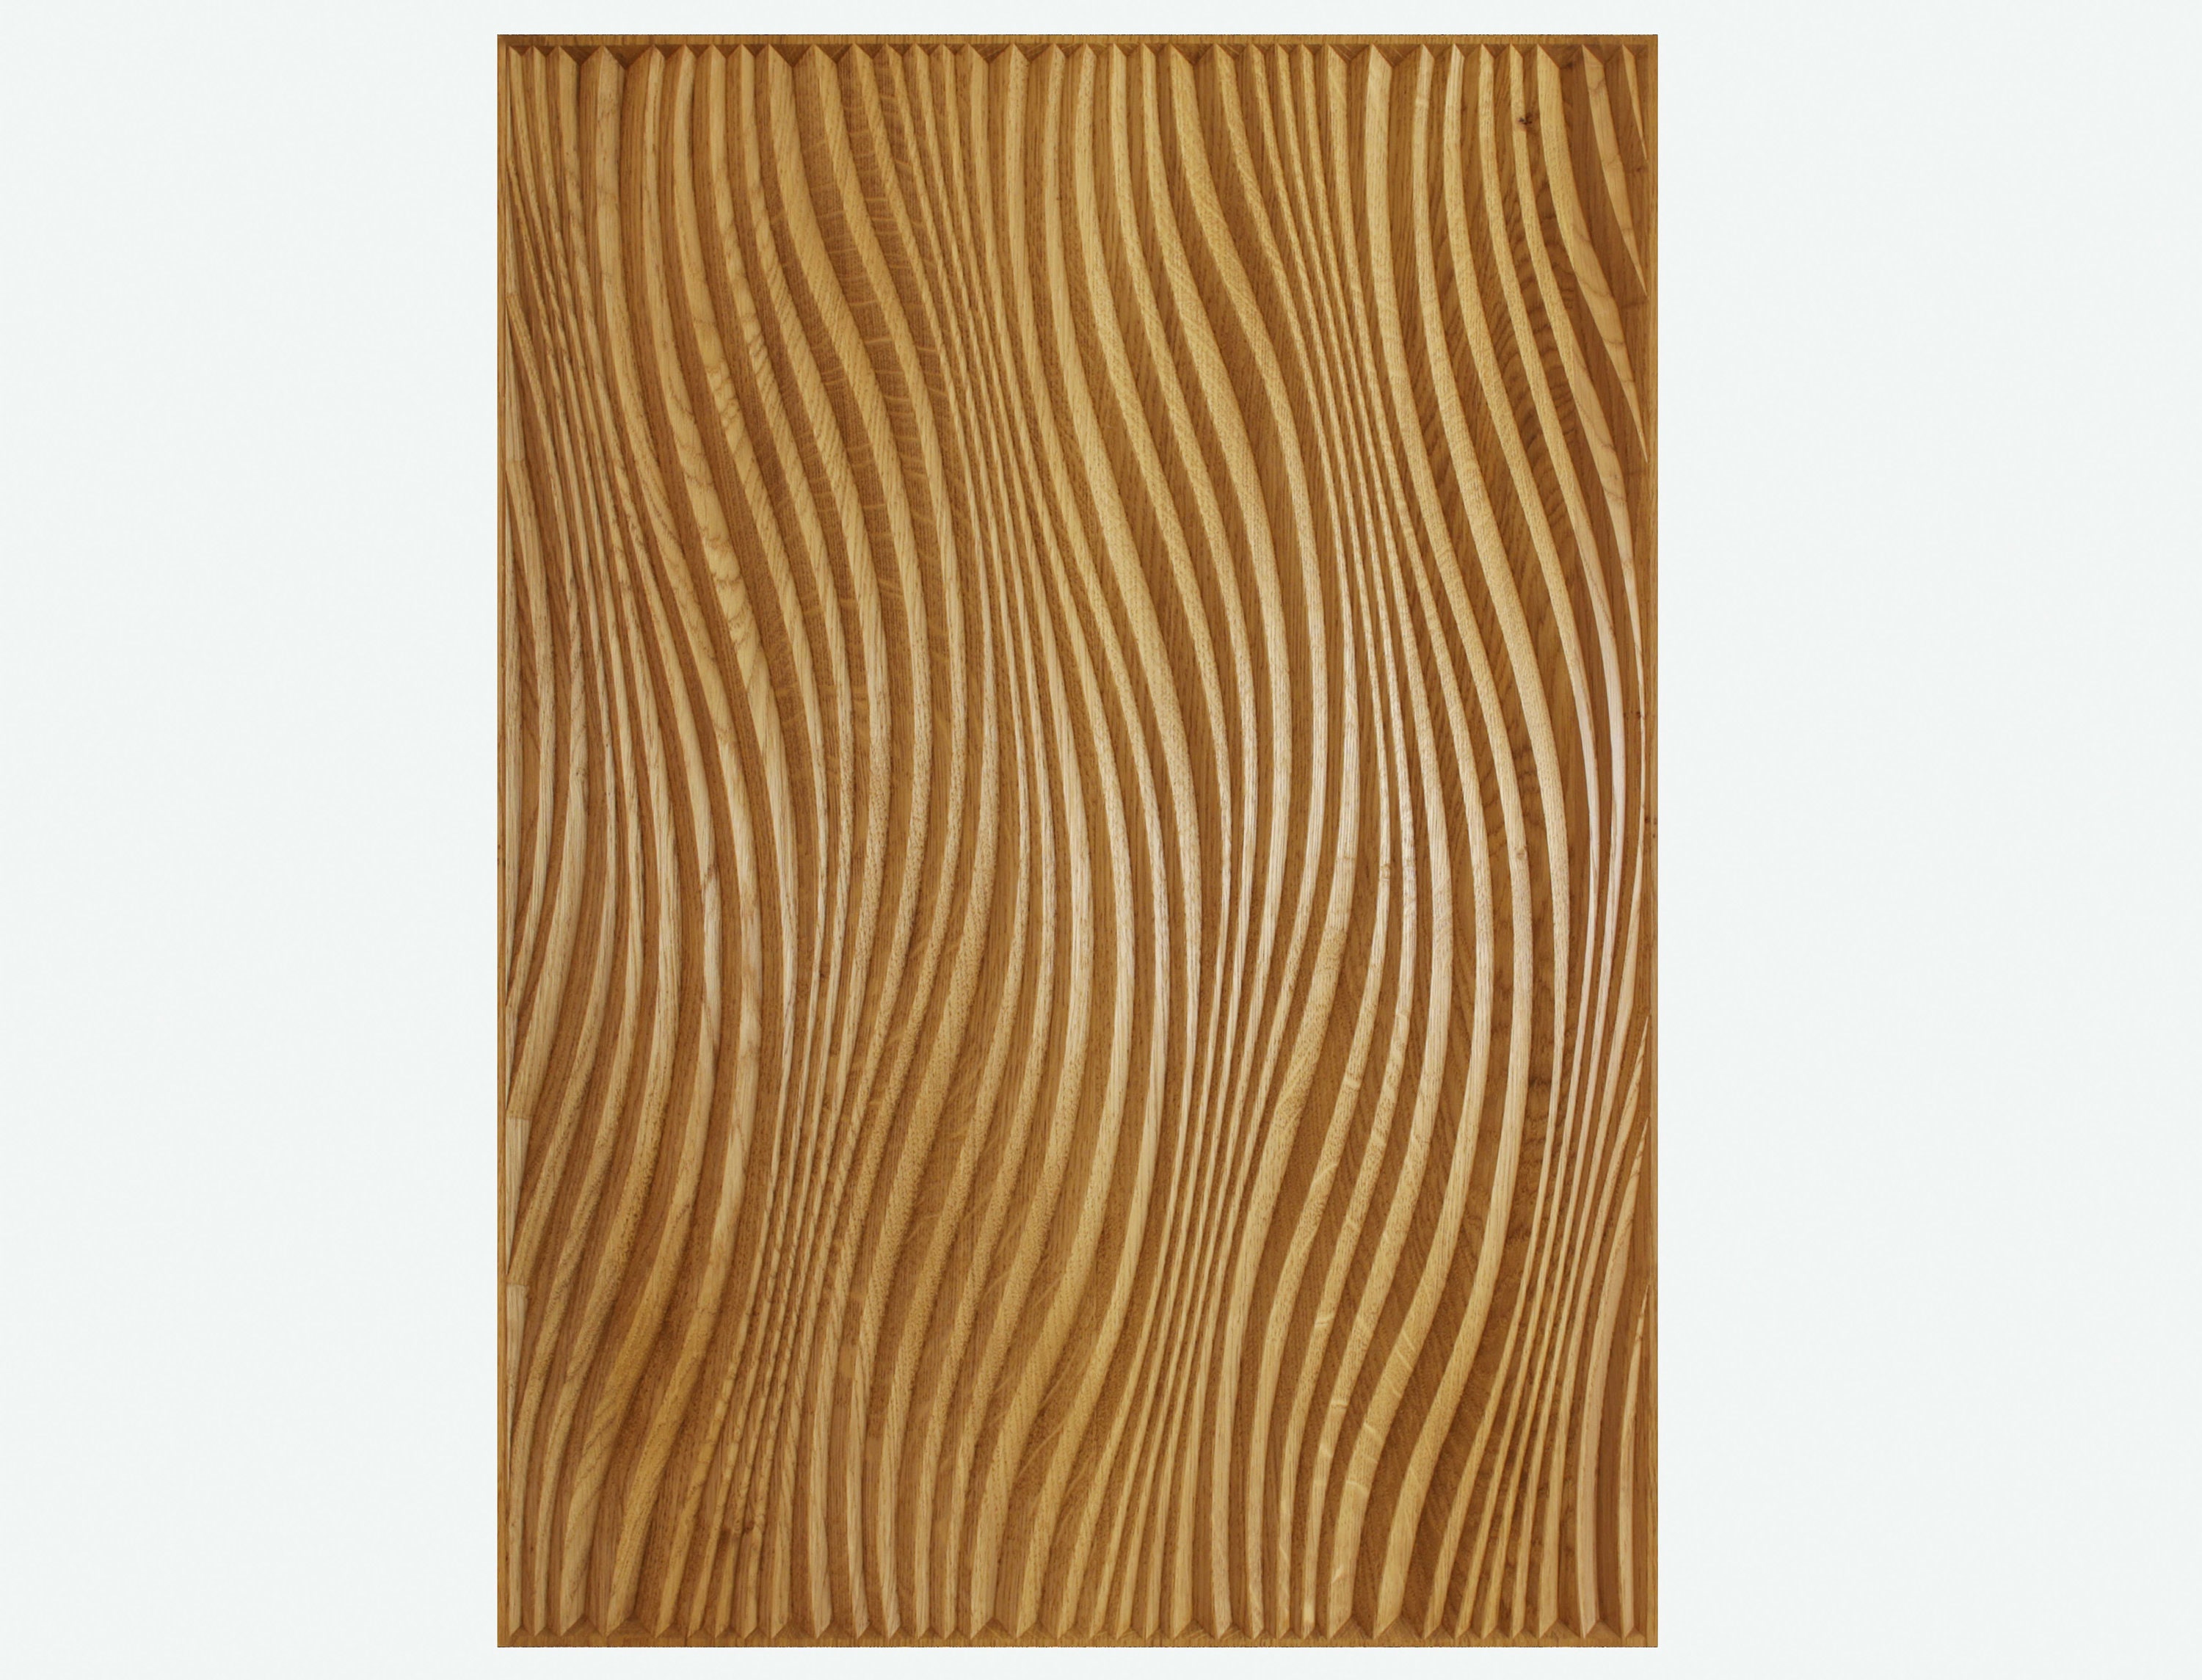 Oak Wall Board, 28x20 Inch Carved Decor. Home Interior Design